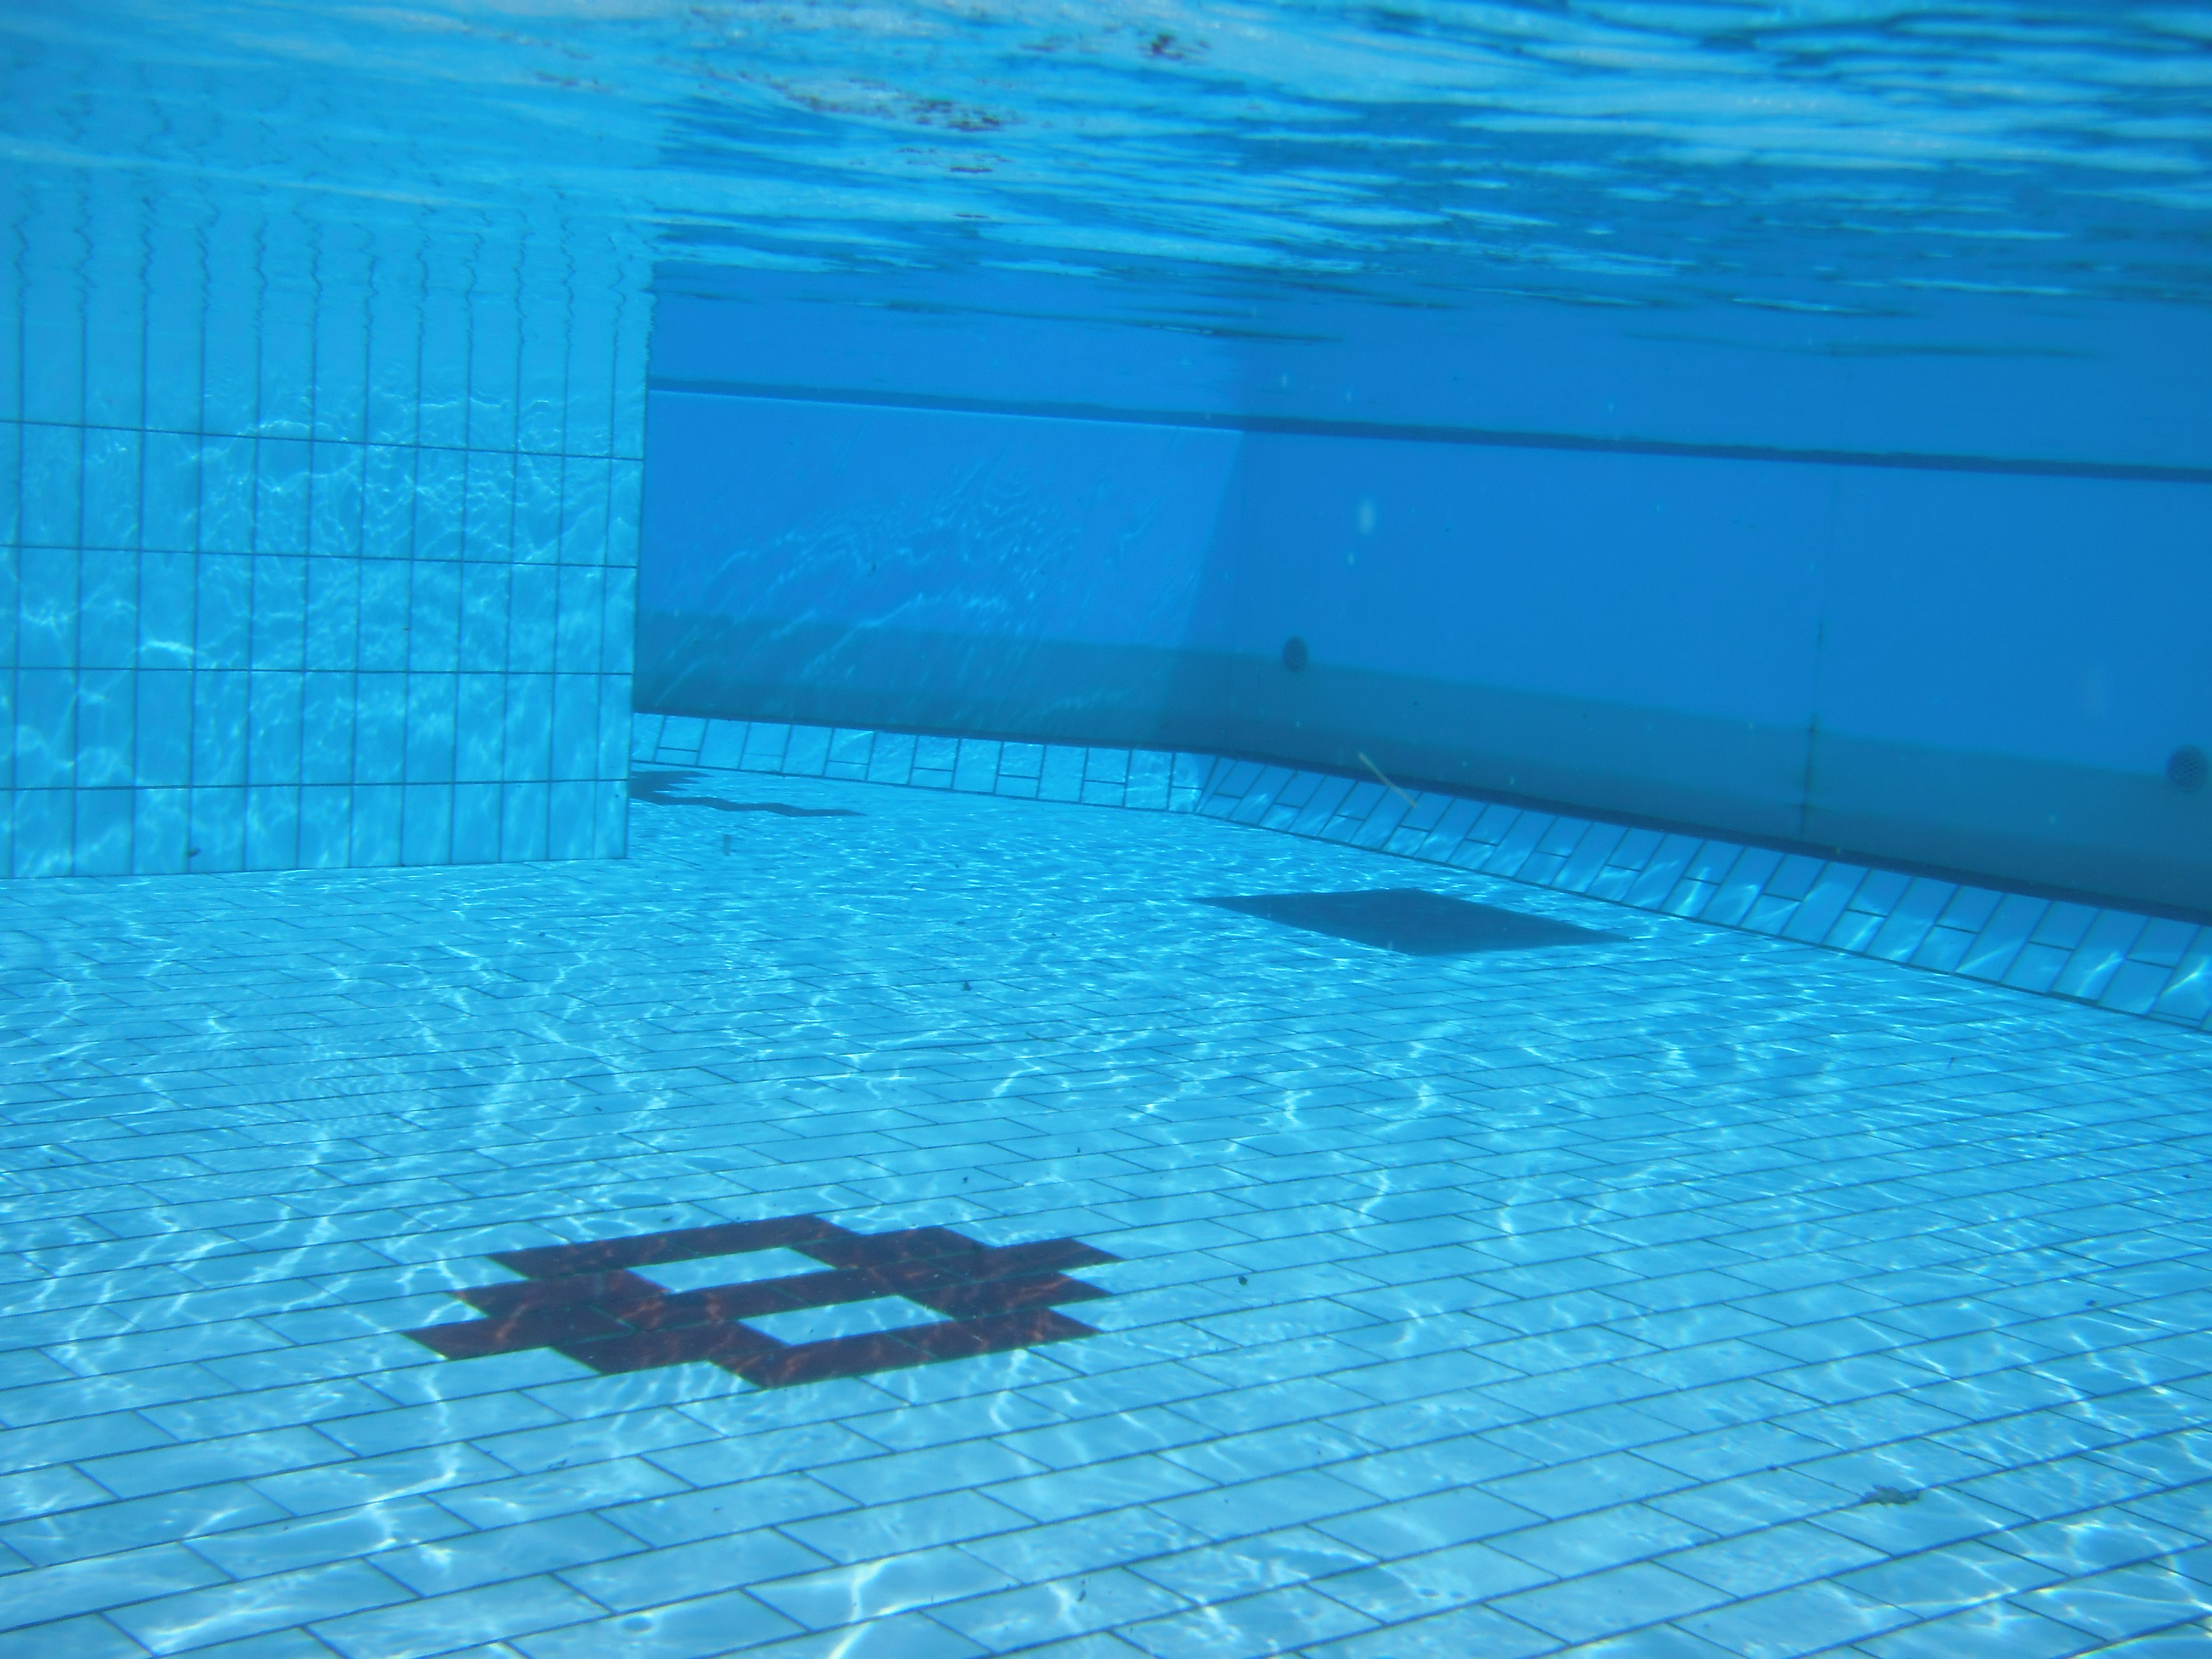 Τραγωδία στην Νέα Μάκρη: Τουλάχιστον 3 λεπτά έμεινε η 10χρονη στον πάτο της πισίνας